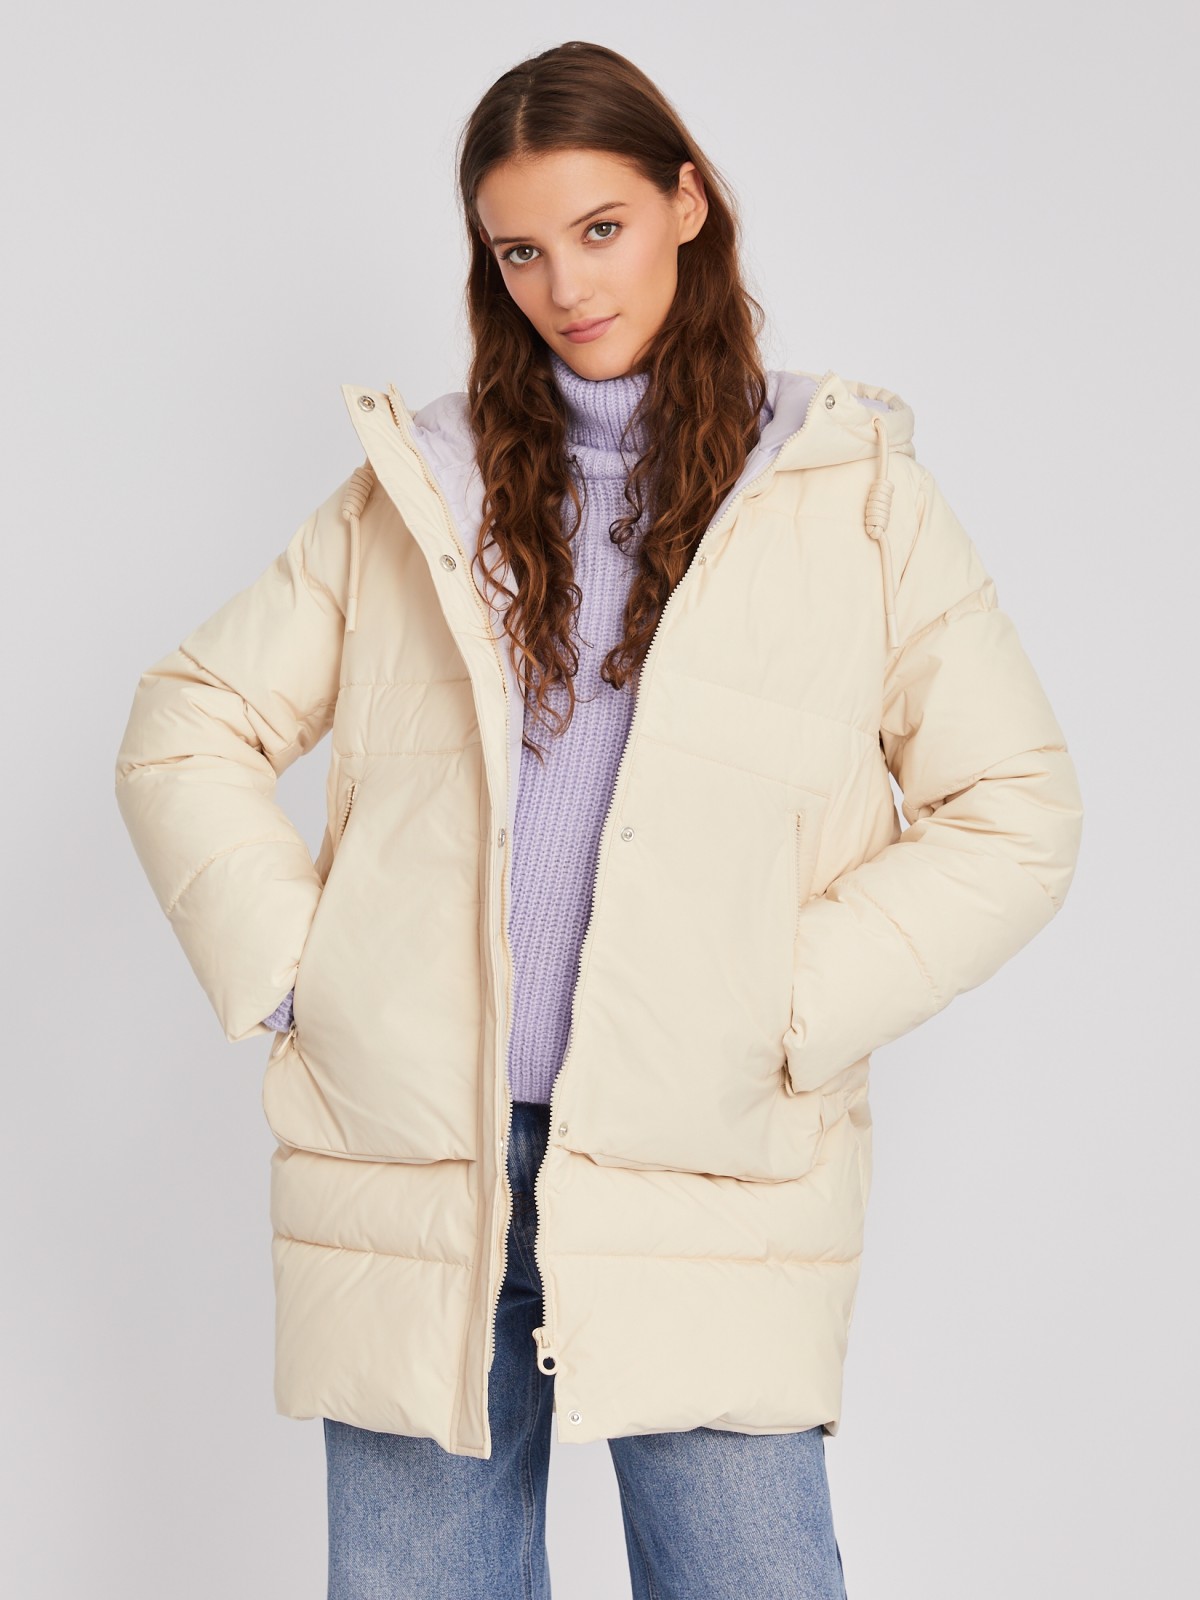 Тёплая стёганая куртка-пальто с капюшоном